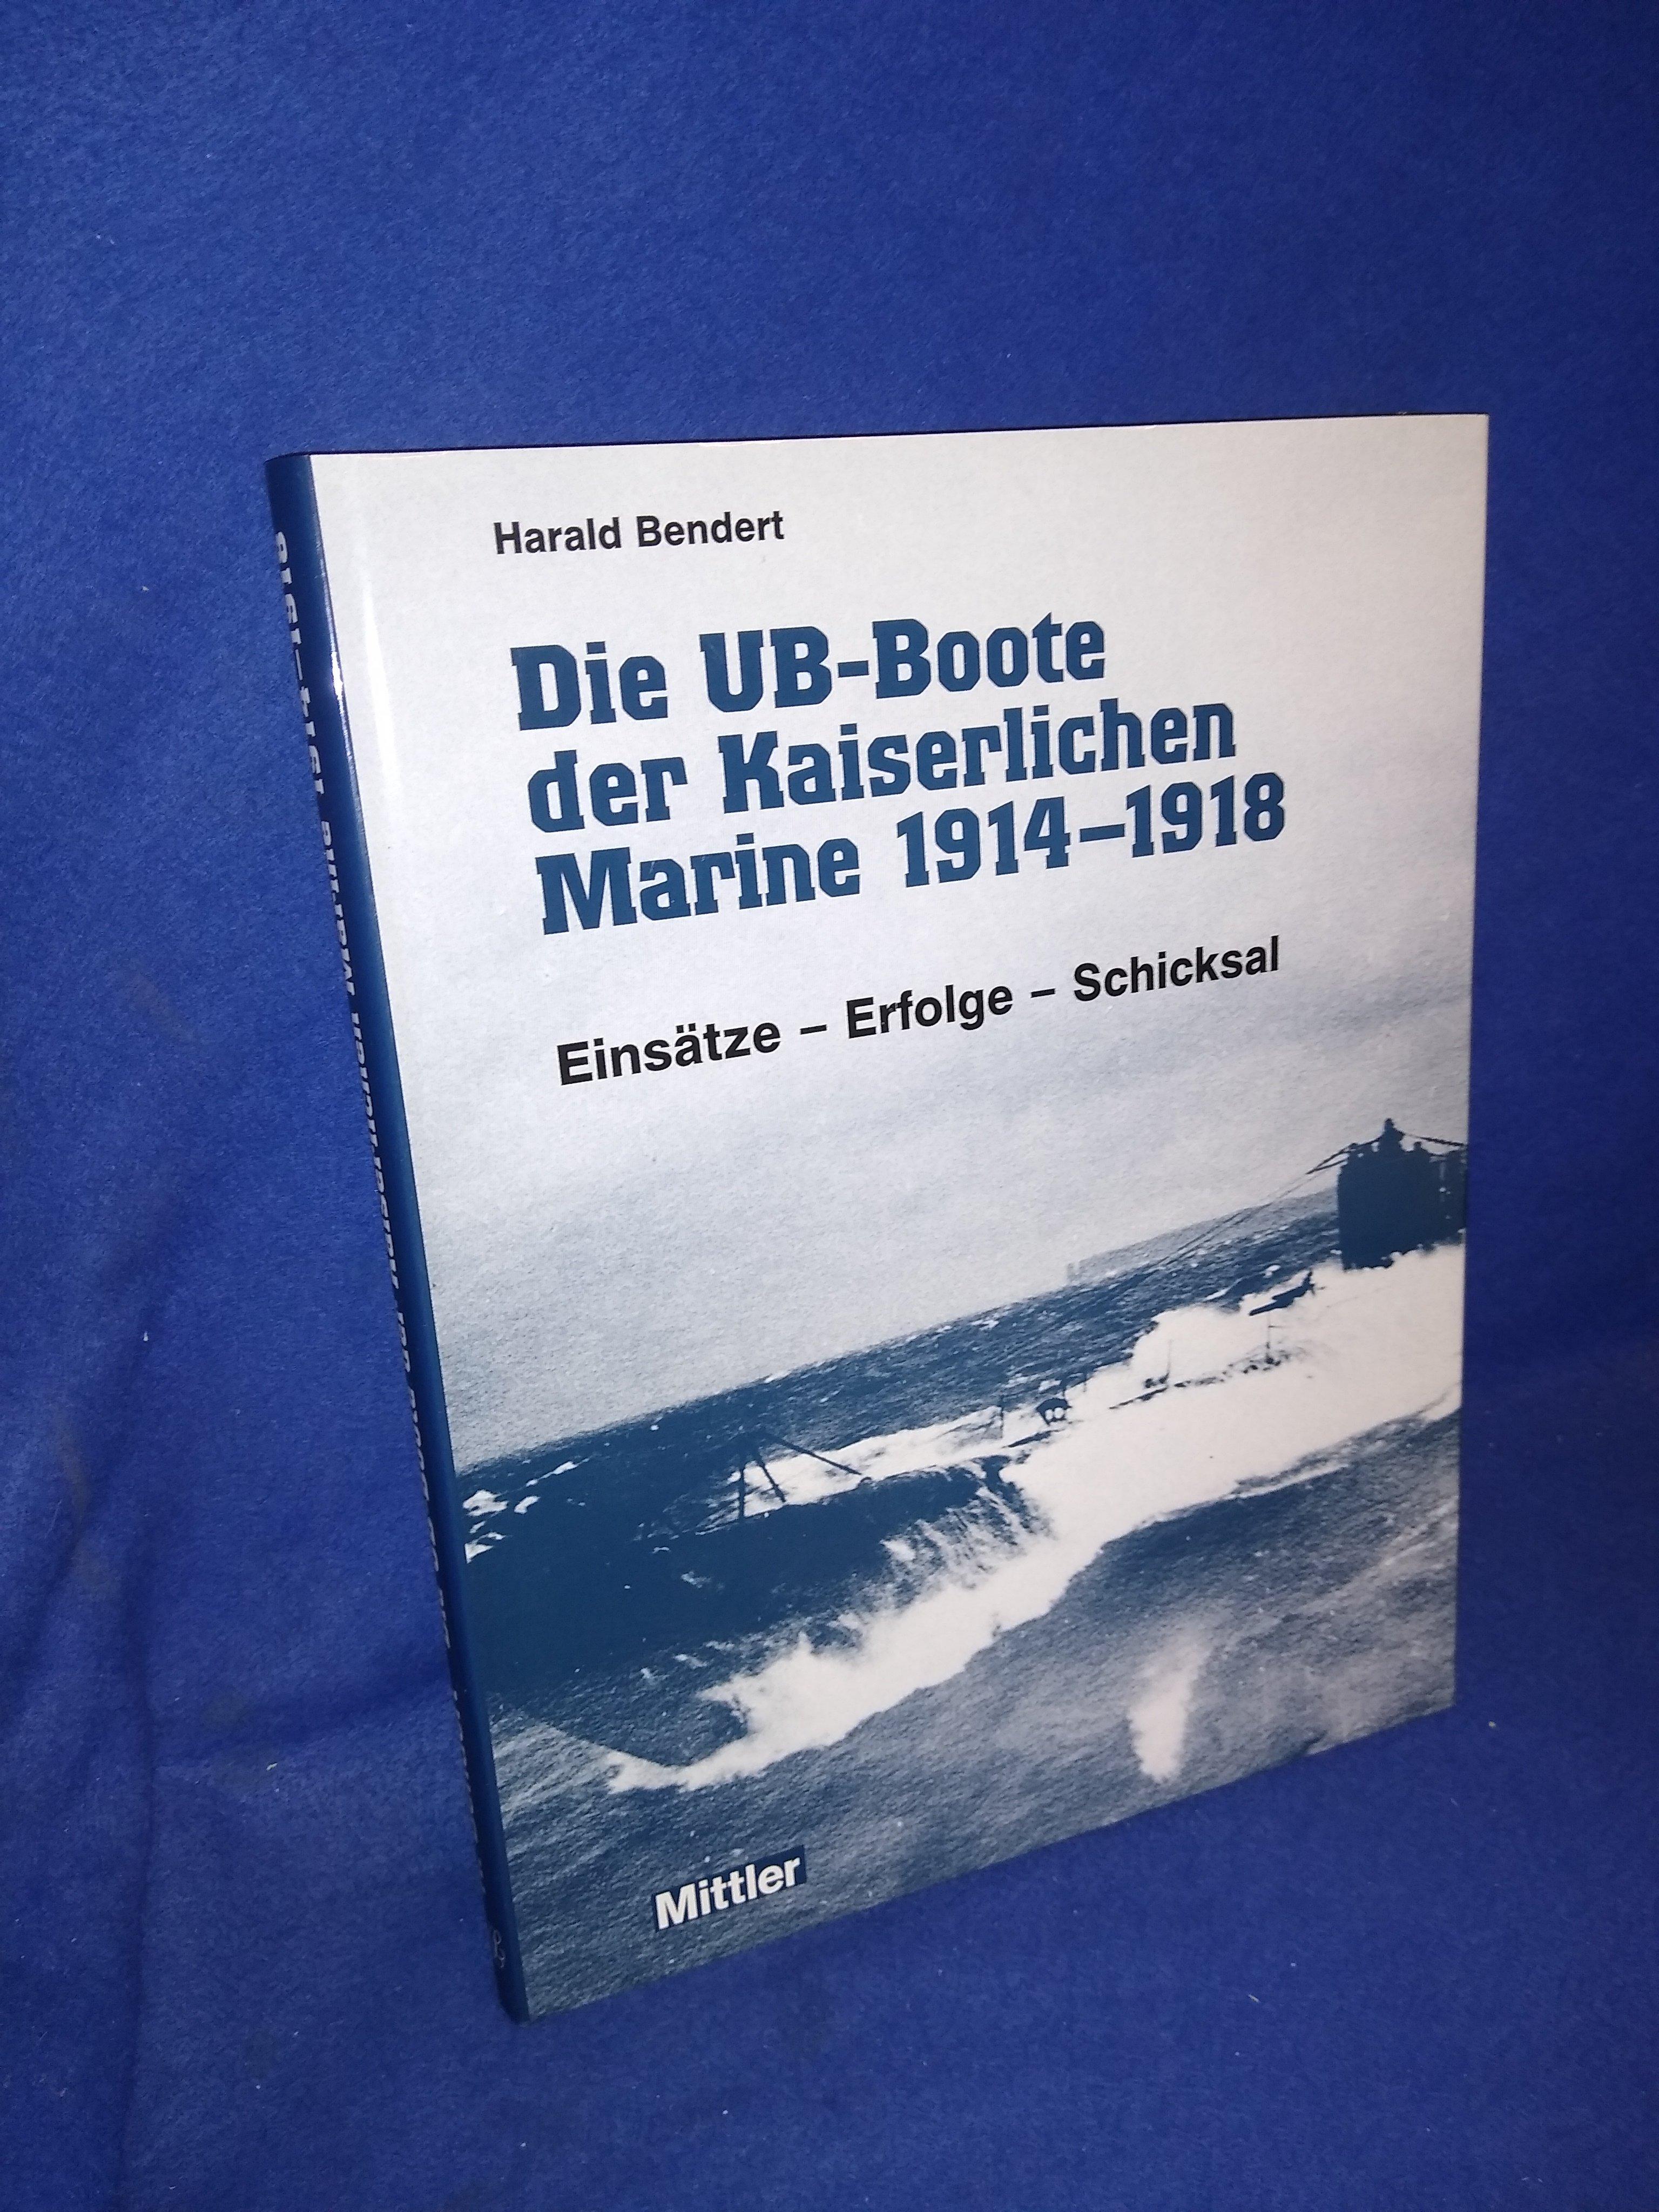 Die UB-Boote der kaiserlichen Marine 1914-1918.Einsätze,Erfolge,Schicksal.